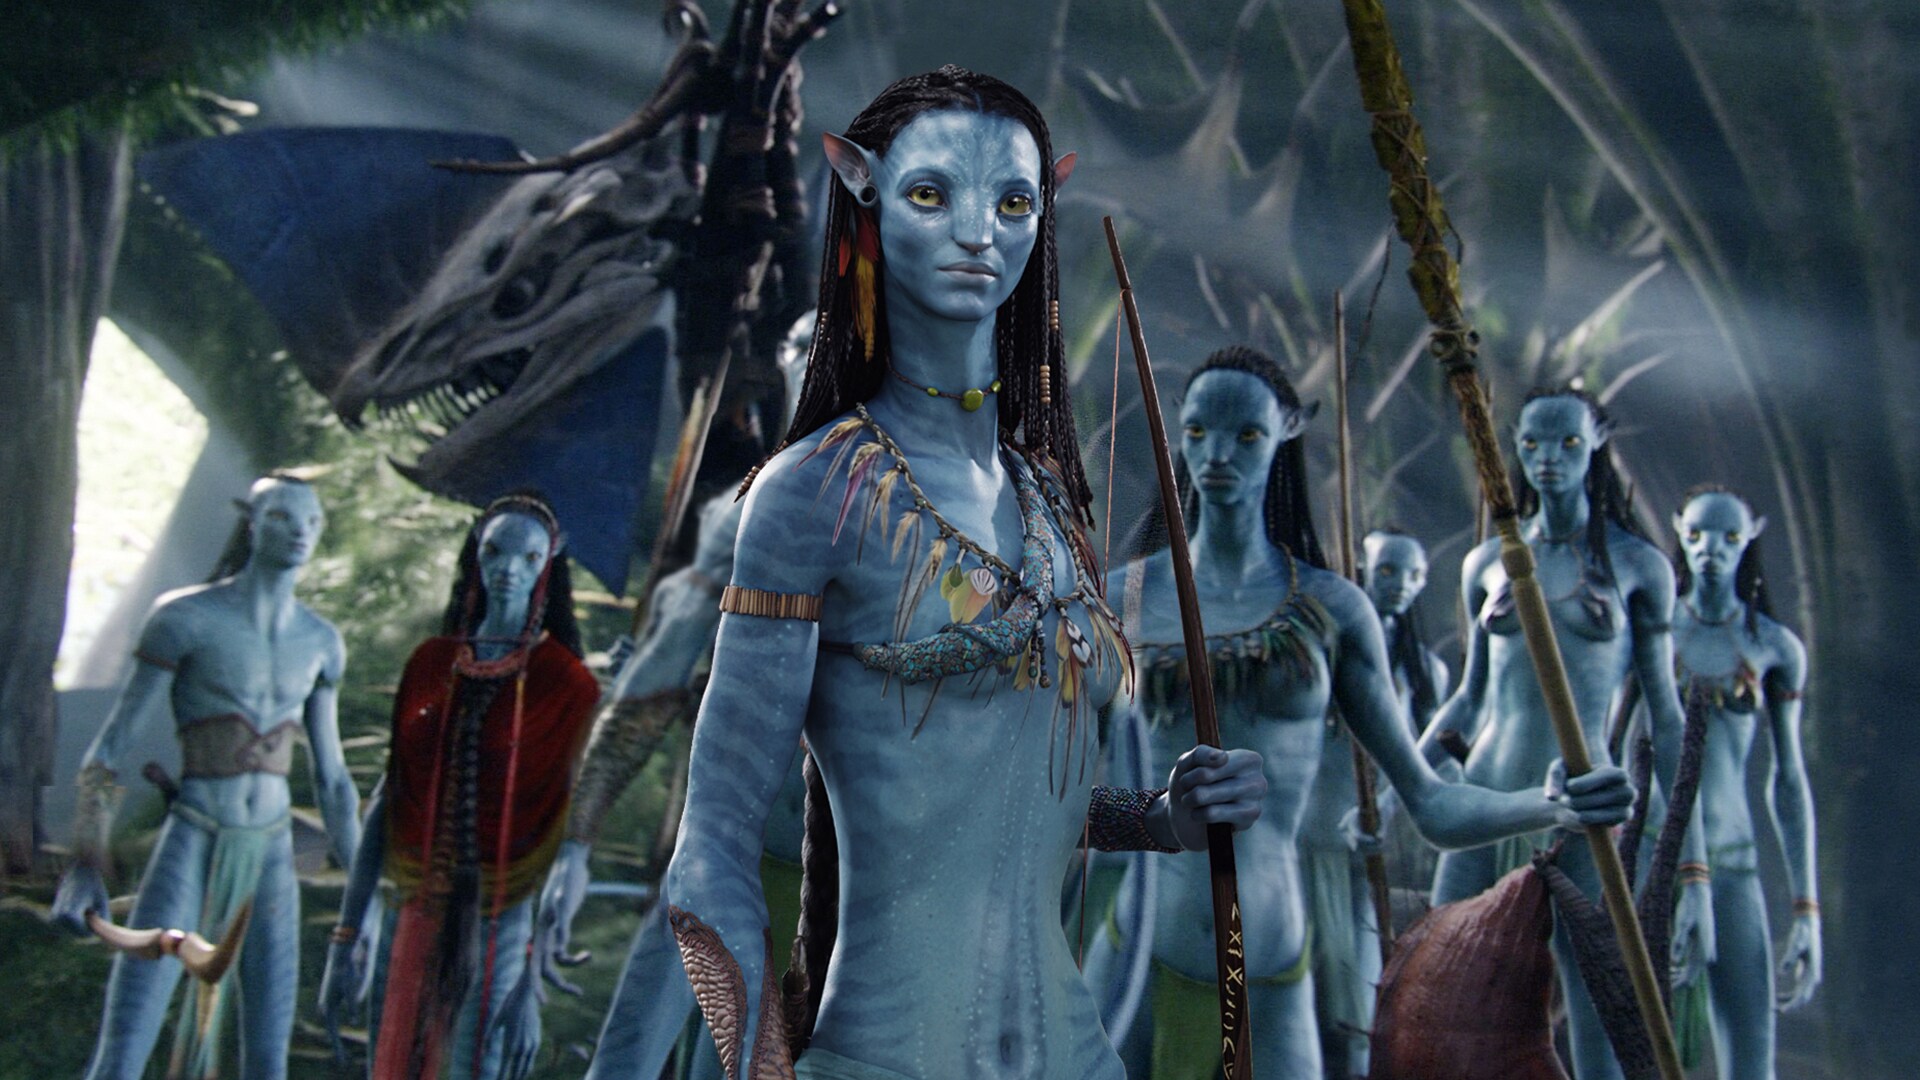 Hành tinh Pandora đẹp như mơ mà đạo diễn James Cameron tạo ra ở trong phim khoa học viễn tưởng 3D Avatar khiến cho những người hâm mộ rơi vào trạng thái trầm cảm vì không thể đến thăm hành tinh “không tưởng” này.